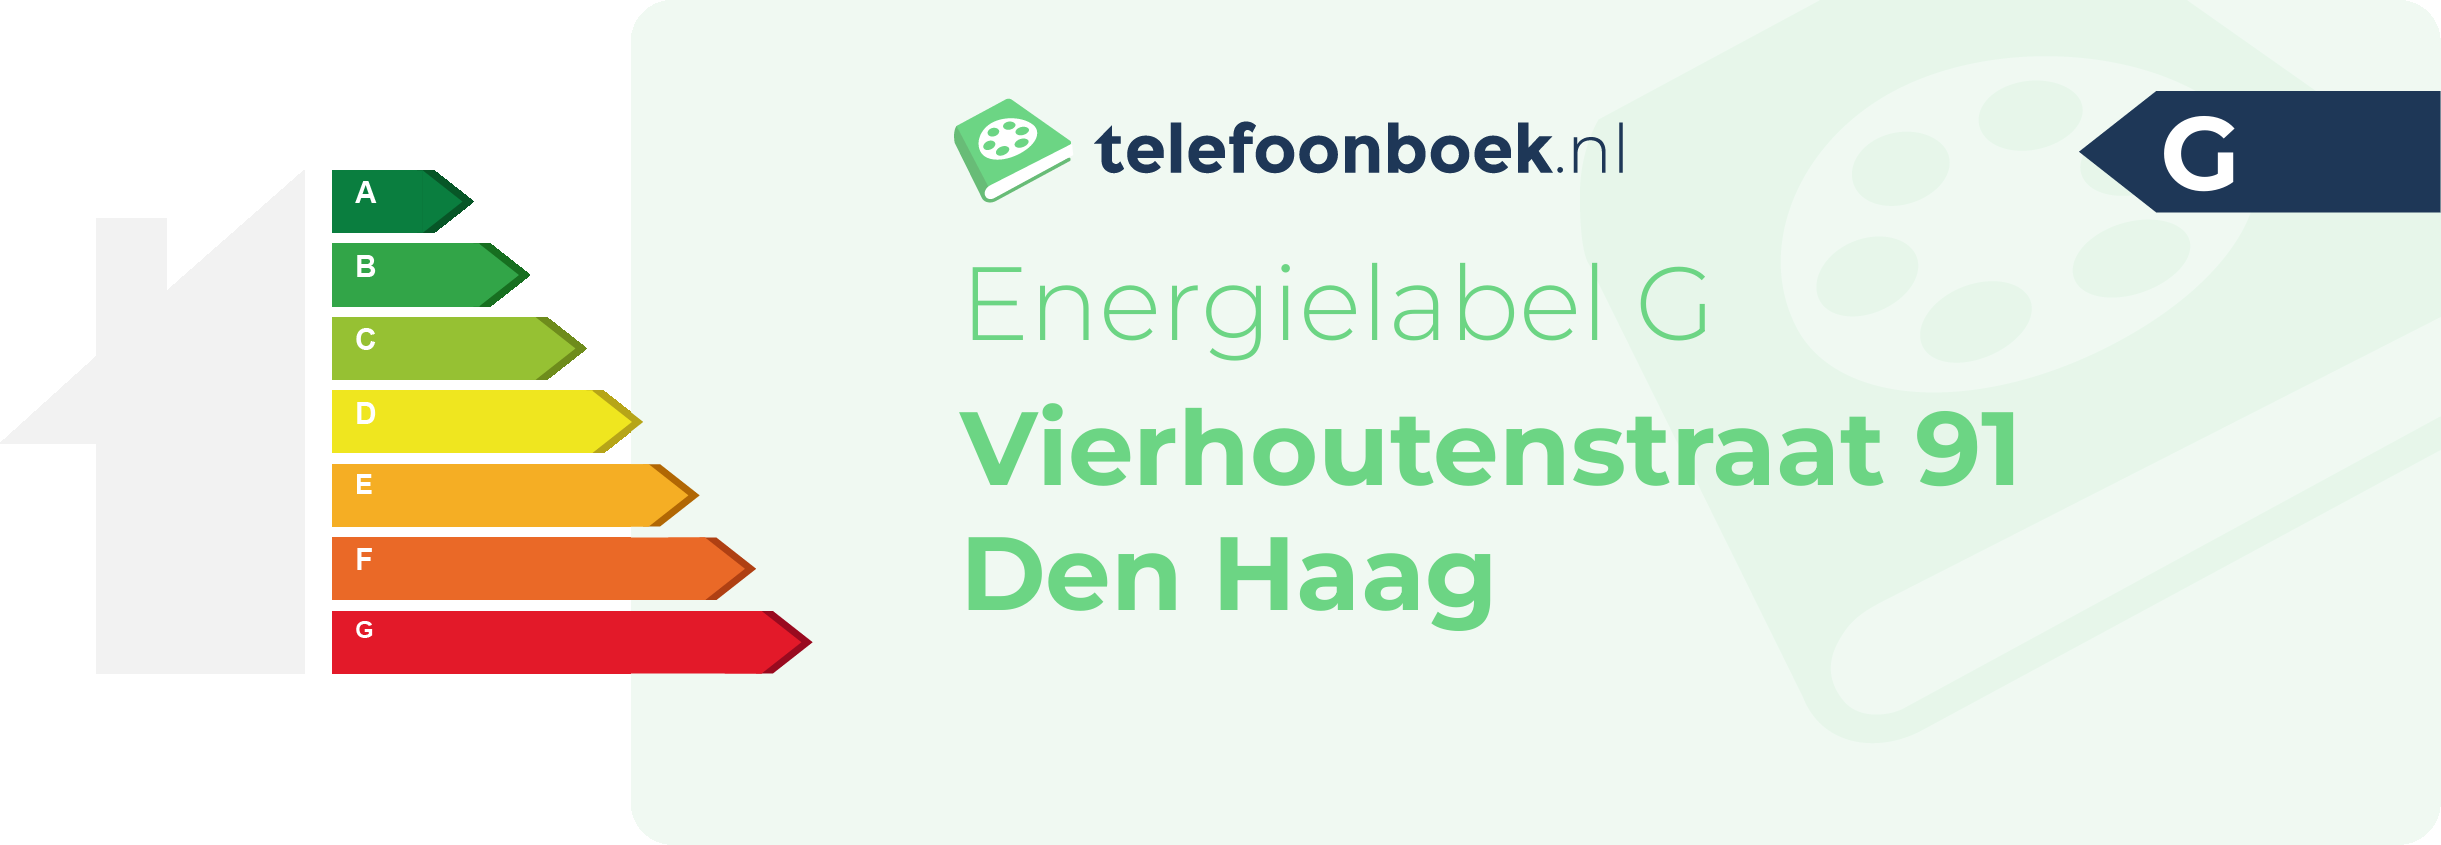 Energielabel Vierhoutenstraat 91 Den Haag